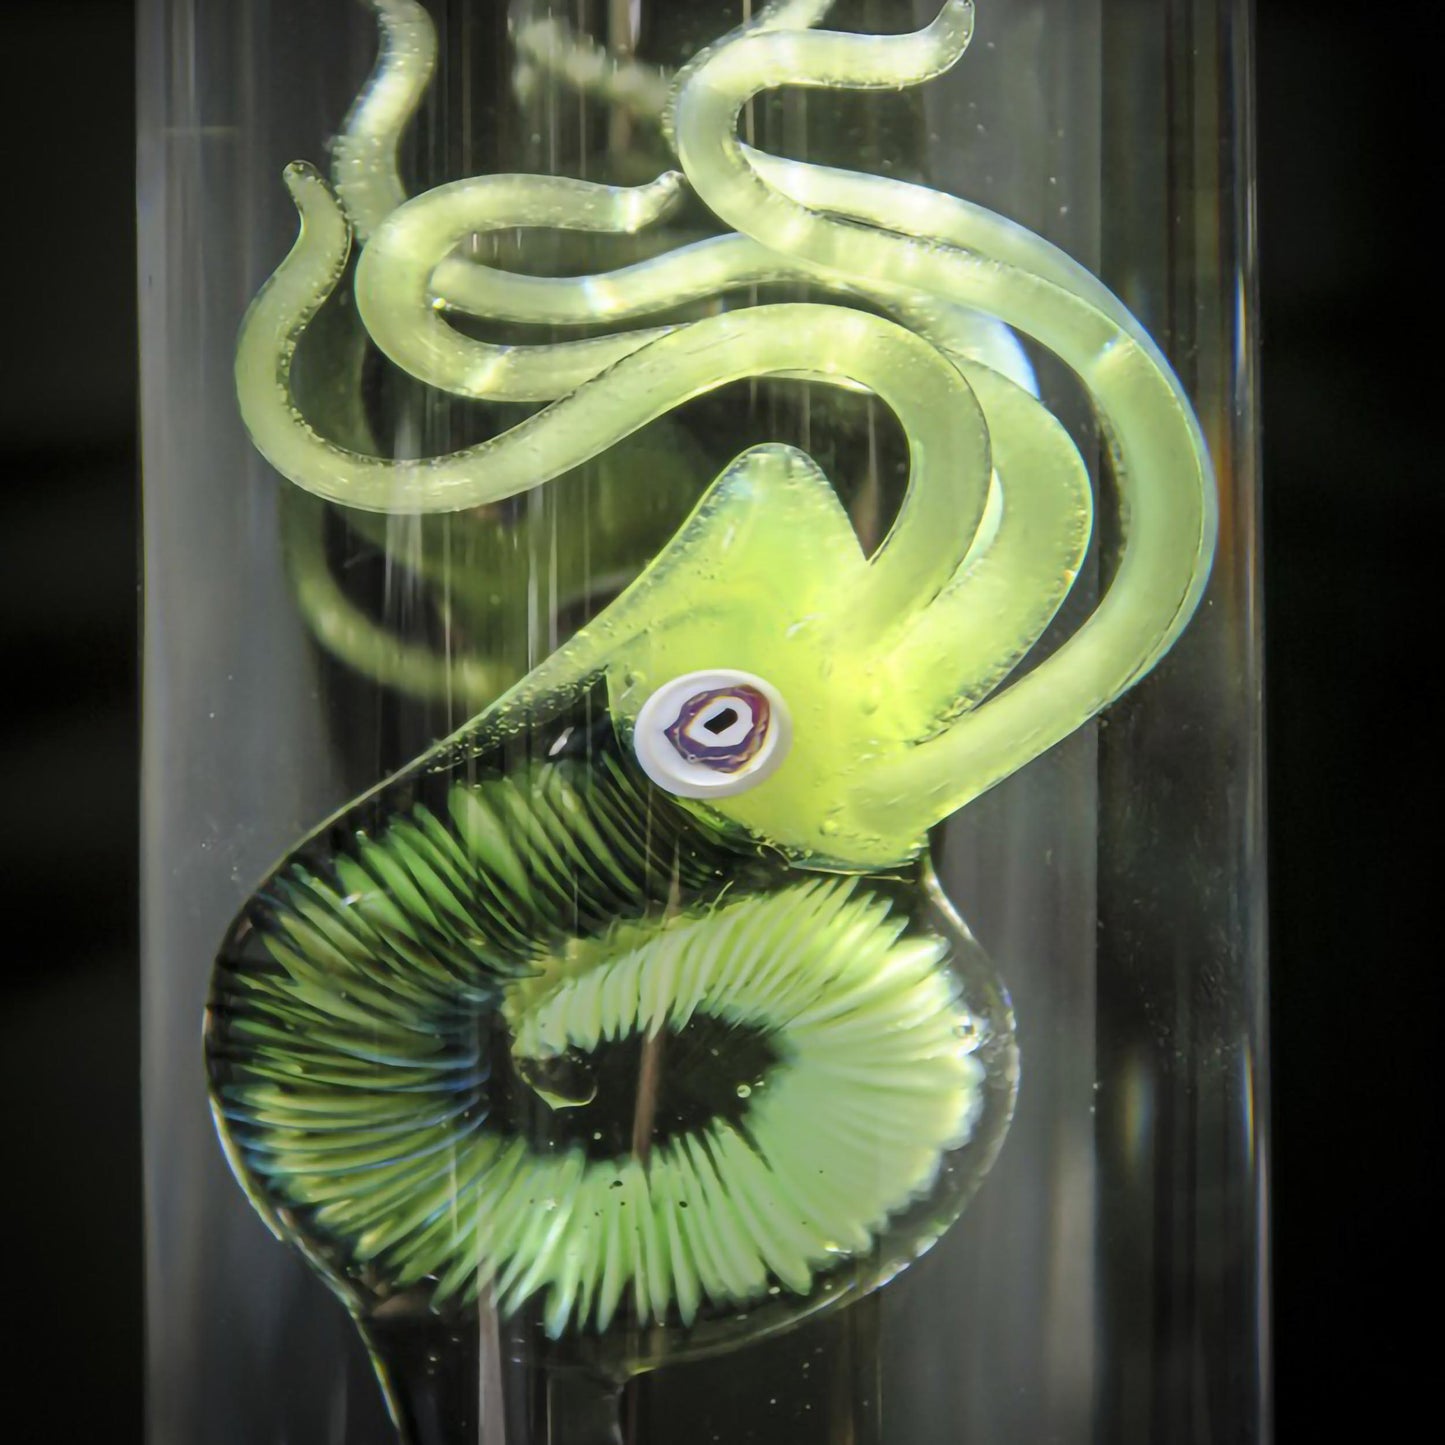 Cabinet de curiosité : Cephalopoda